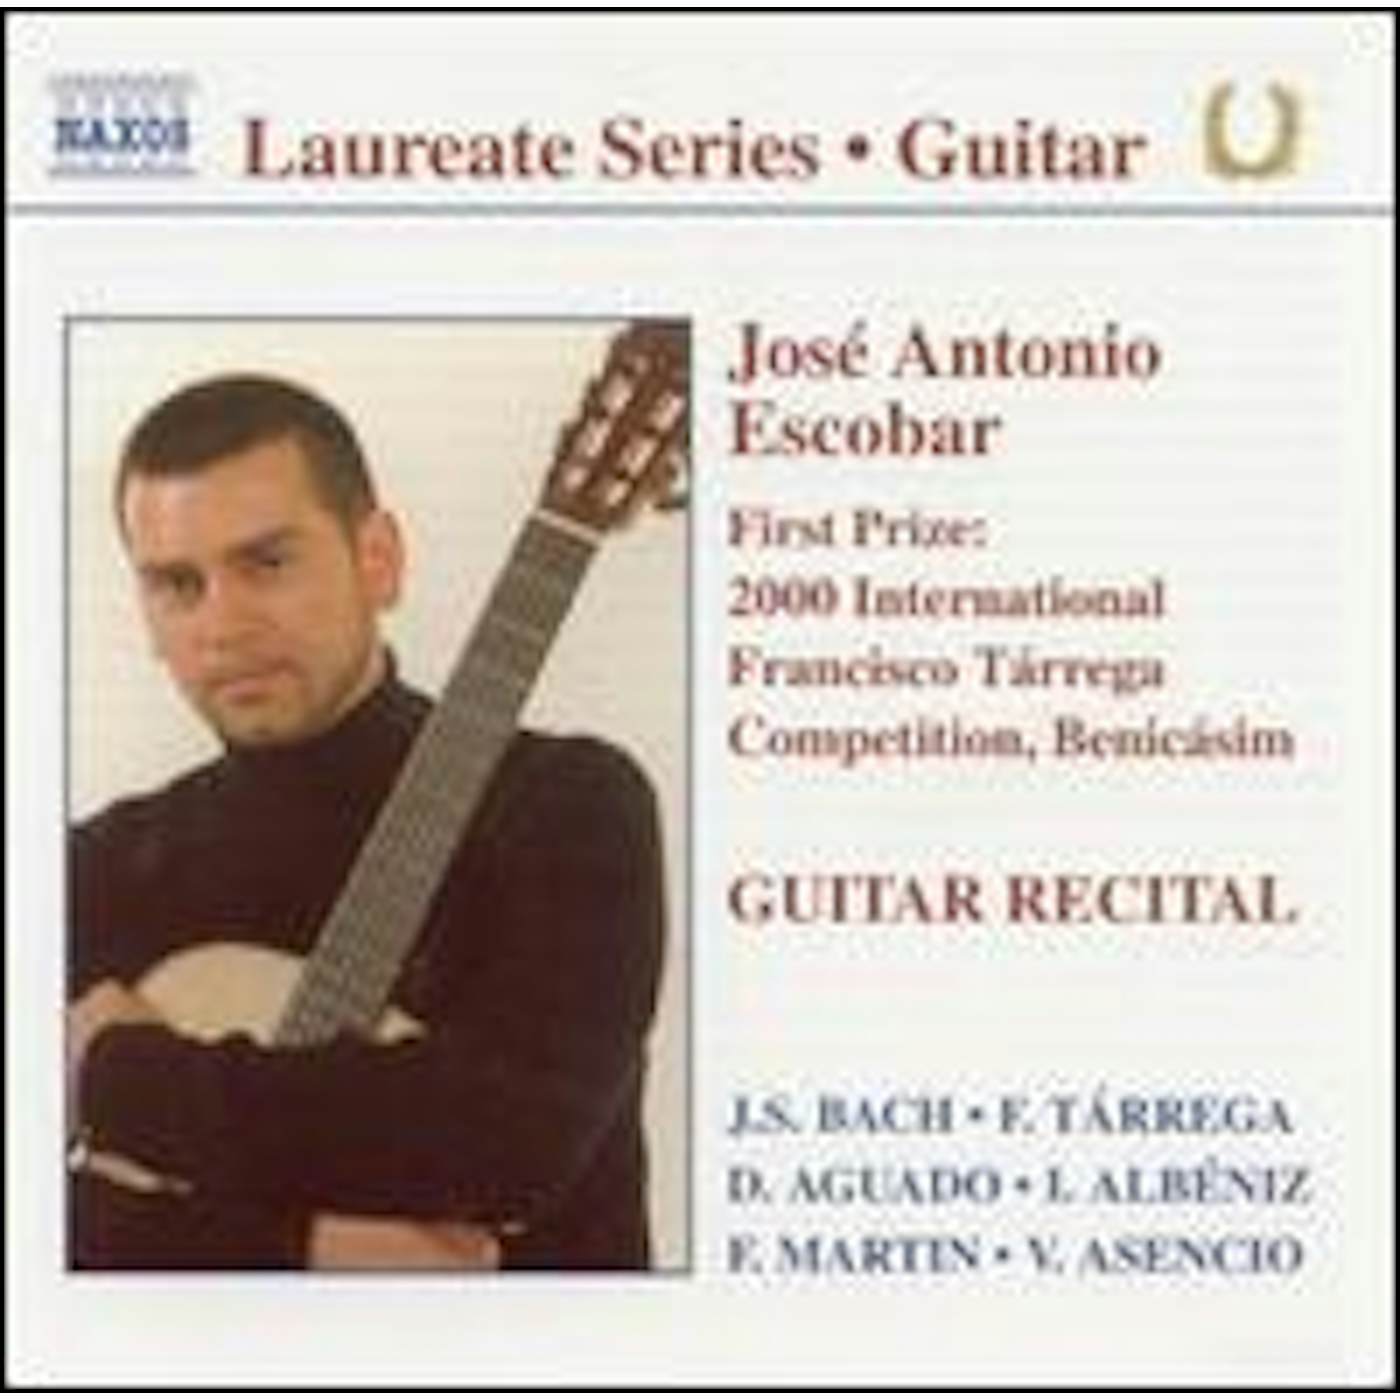 JOSE José Antonio Escobar GUITAR RECITAL CD